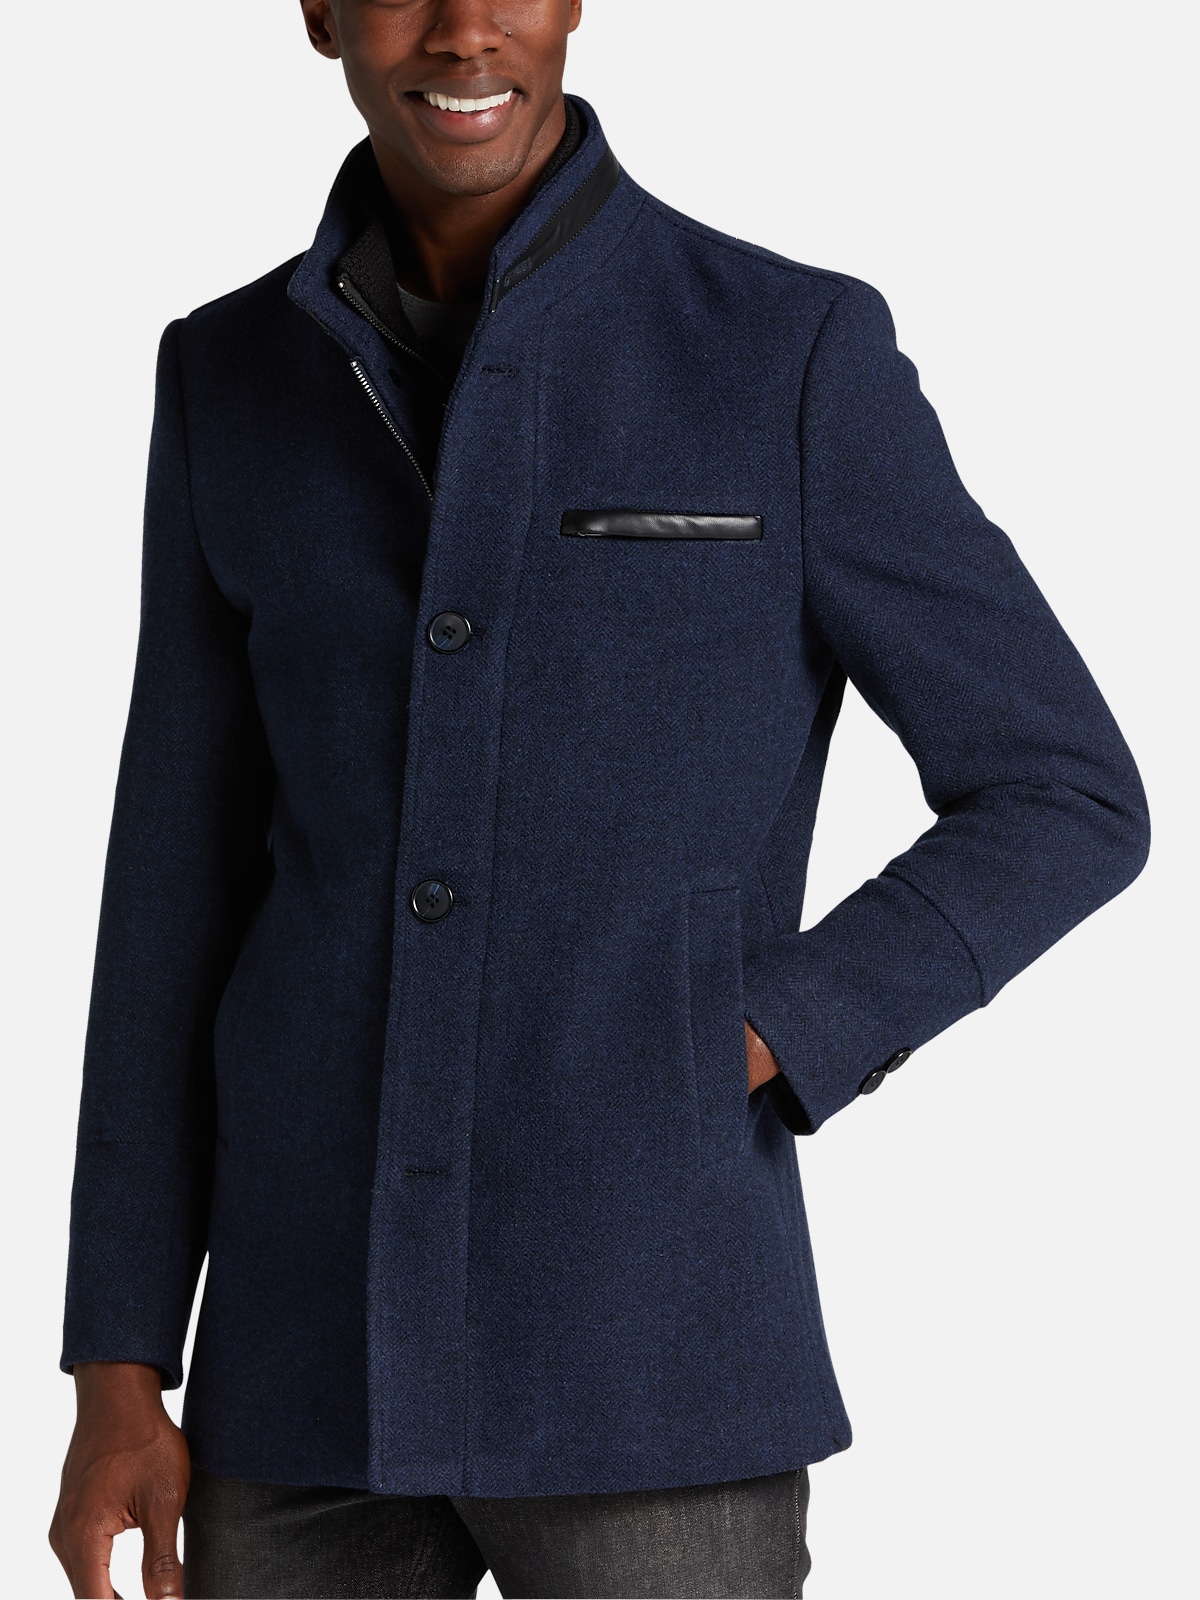 Joseph Abboud Modern Fit Carcoat | Outerwear| Men's Wearhouse